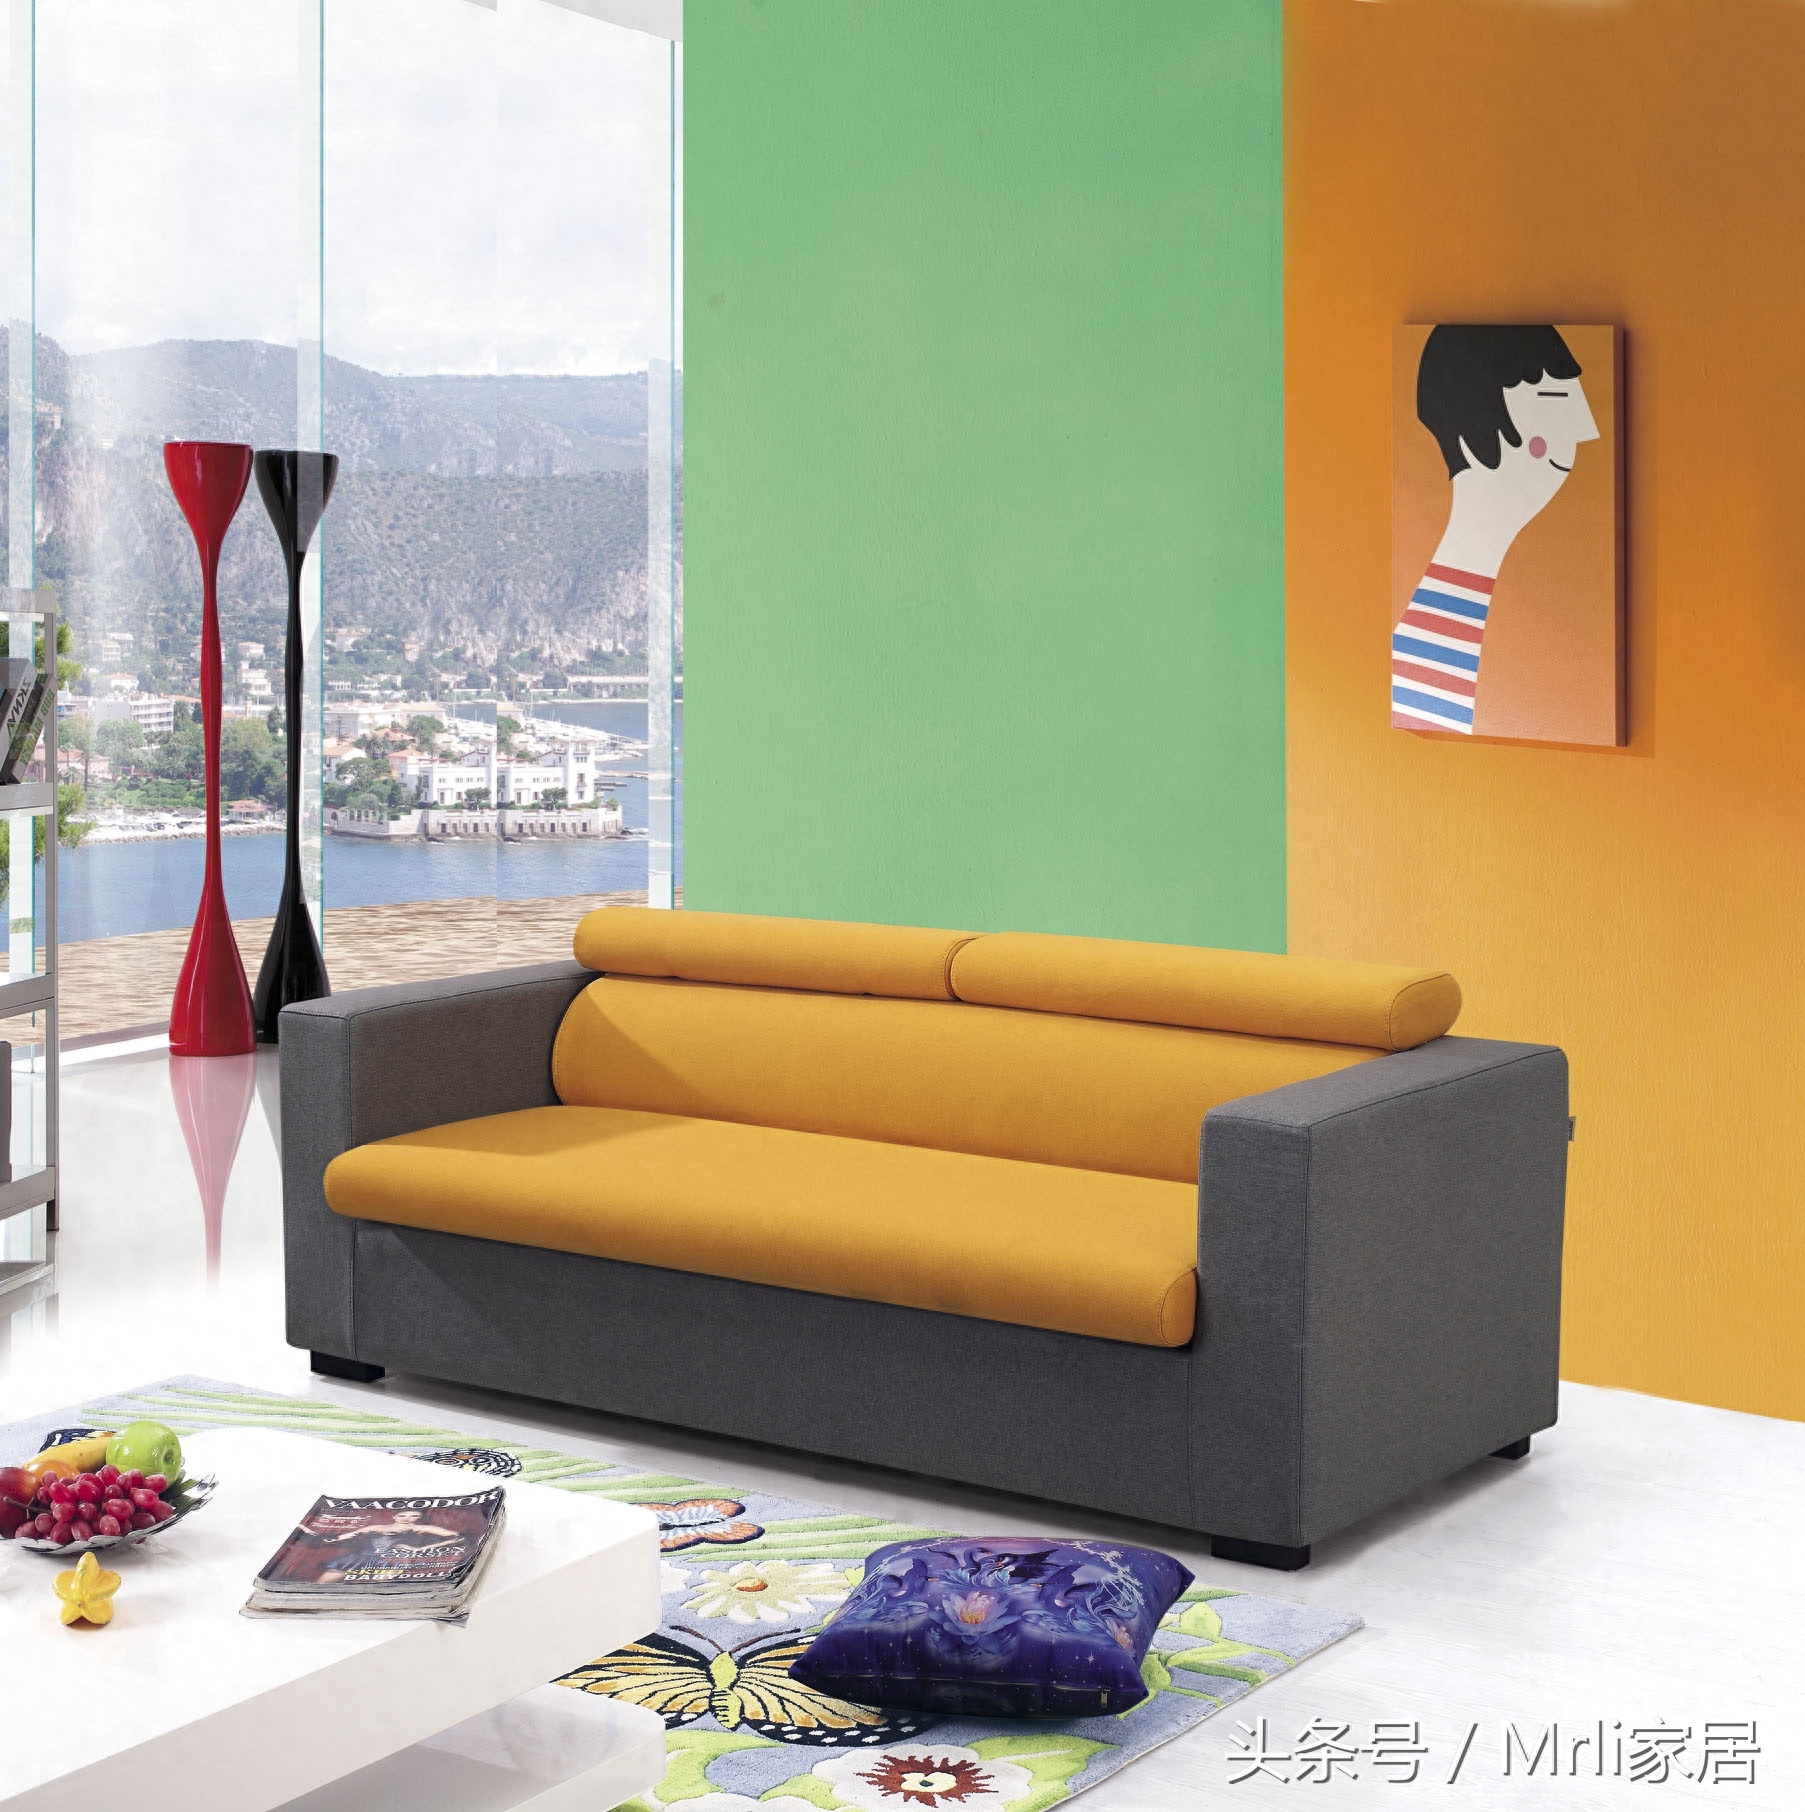 一张沙发床让你的家有着不一样的风格